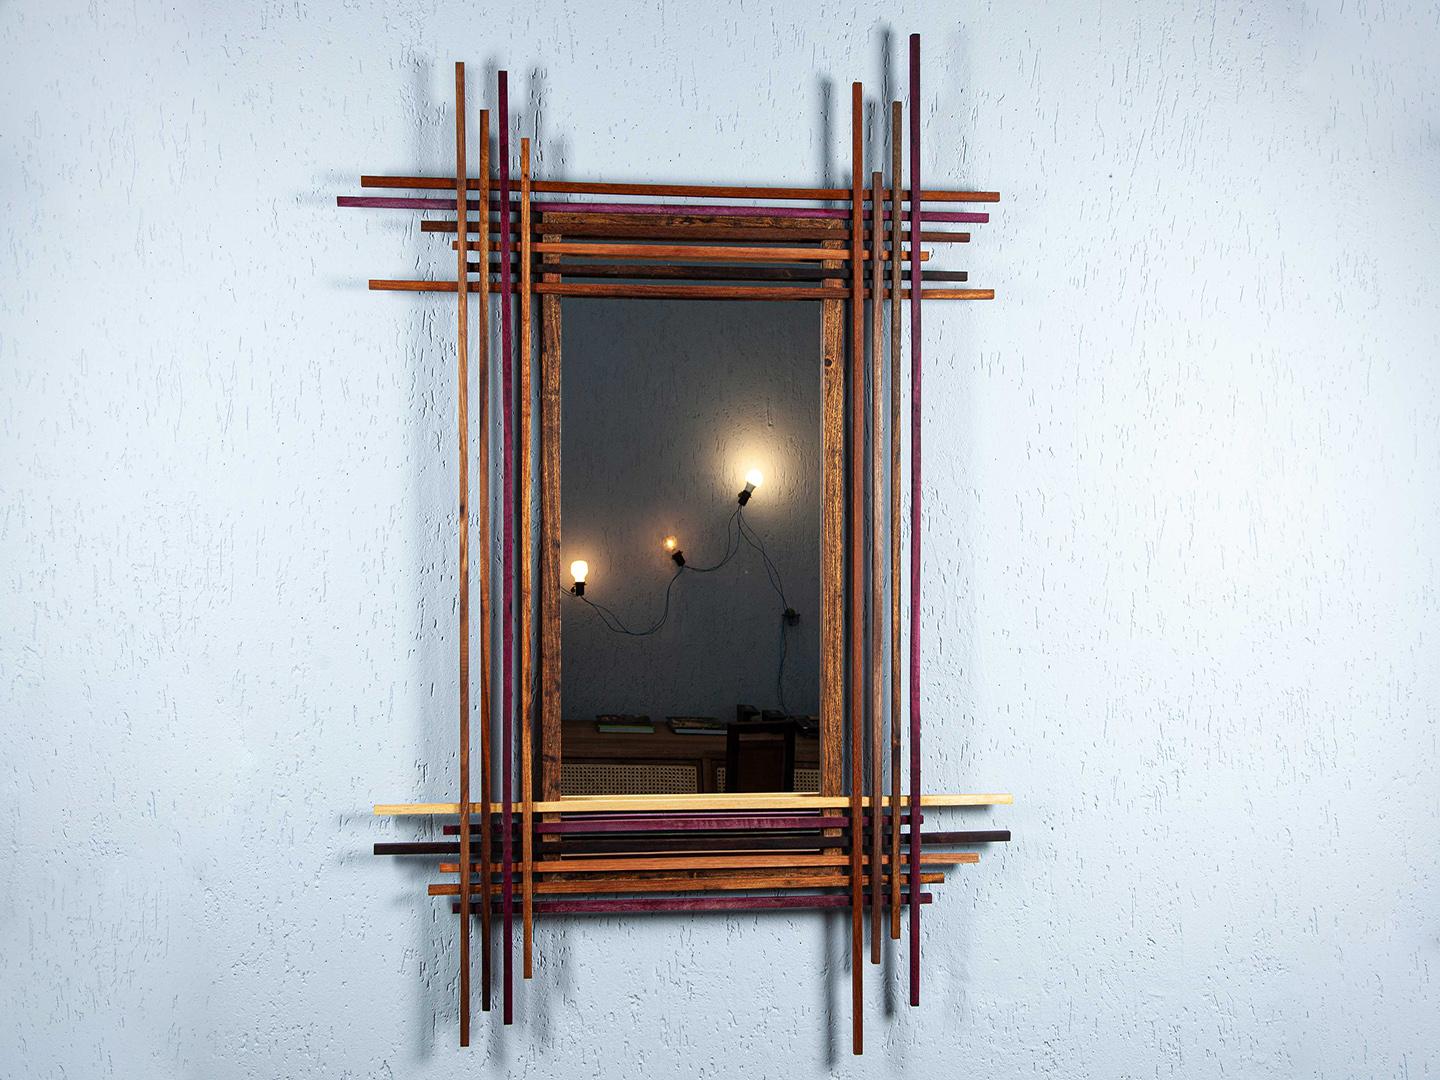 Le miroir Fragmentos est entièrement fabriqué à partir de bois de récupération provenant de projets antérieurs. Sa conception mêle harmonieusement symétrie et asymétrie, ce qui permet d'obtenir des contours toujours diversifiés. Il n'y a jamais eu